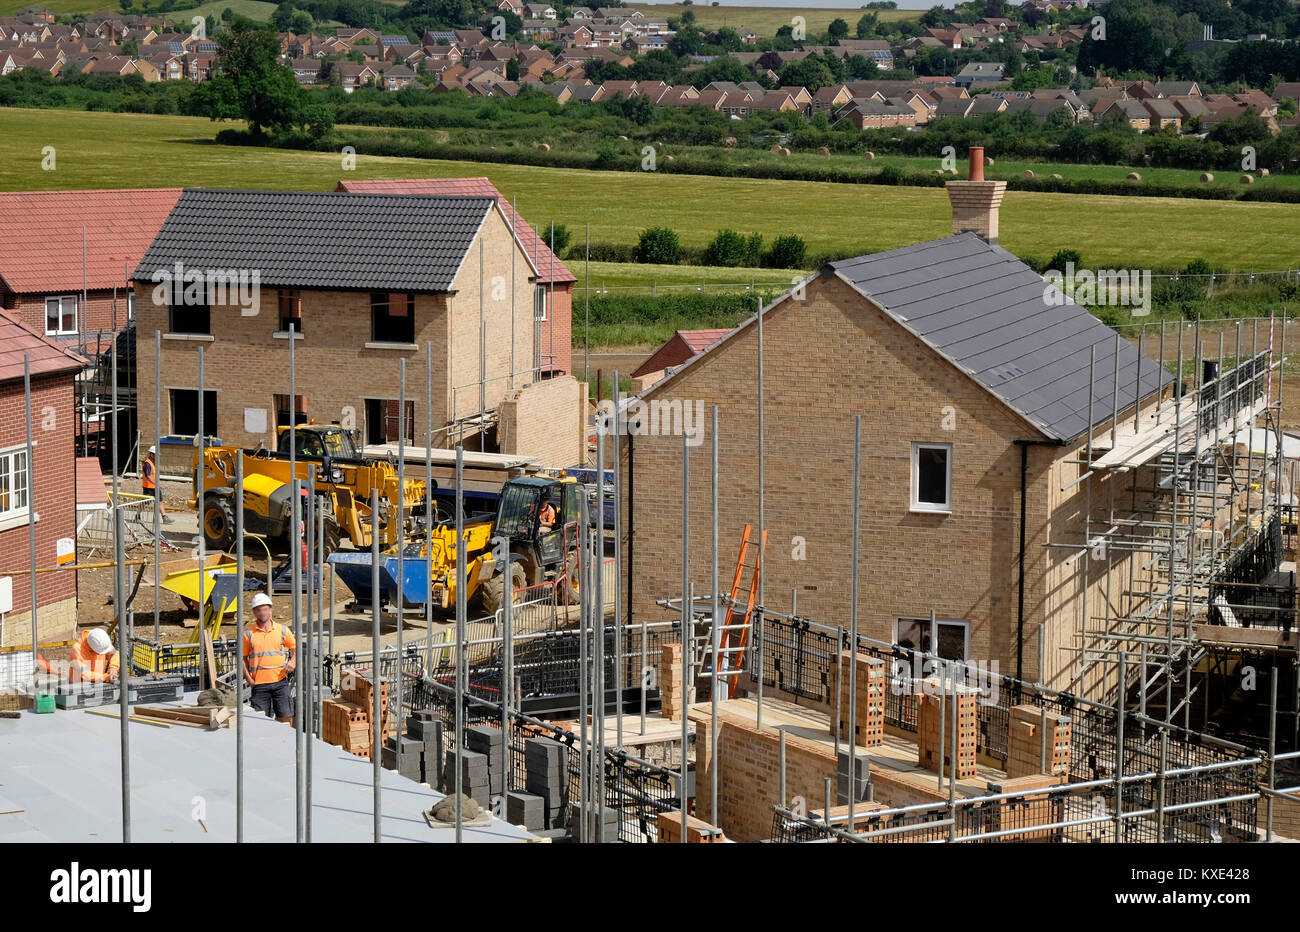 La construction de nouveaux logements Estate, Lincolnshire, Angleterre, Royaume-Uni. Banque D'Images